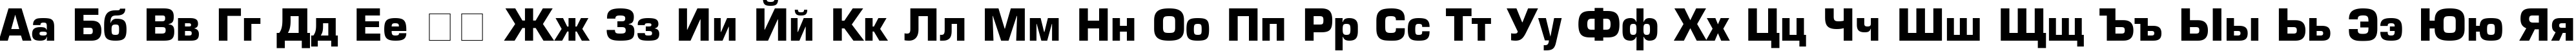 Пример написания русского алфавита шрифтом font144